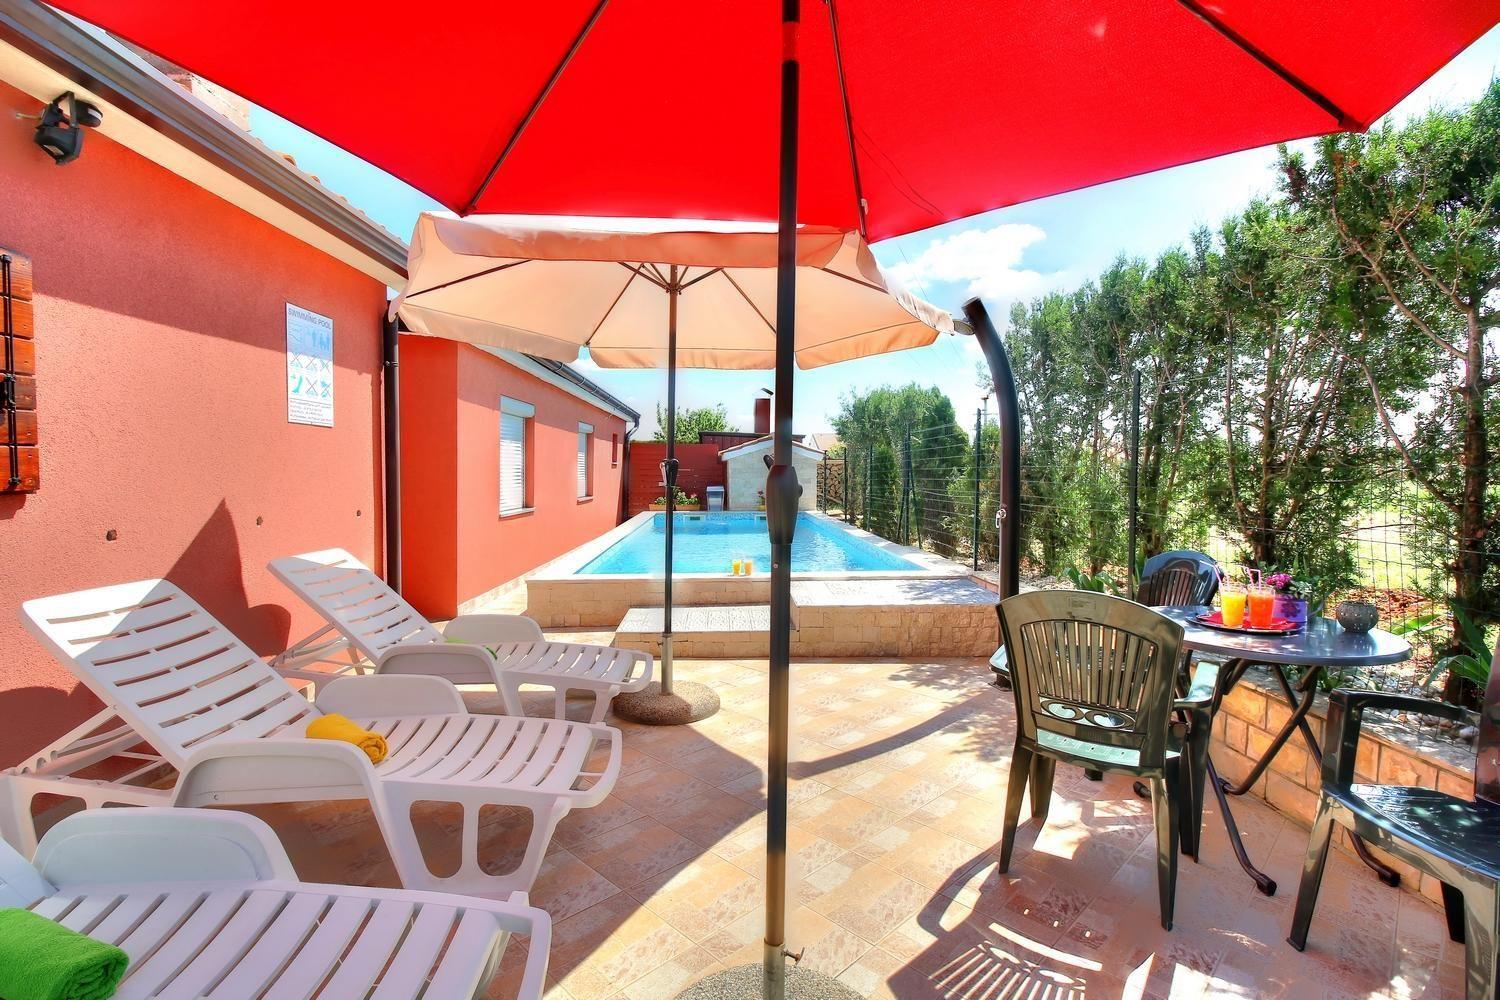  Ferienhaus mit Pool und zahlreichen Annehmlichkei Ferienhaus in Kroatien